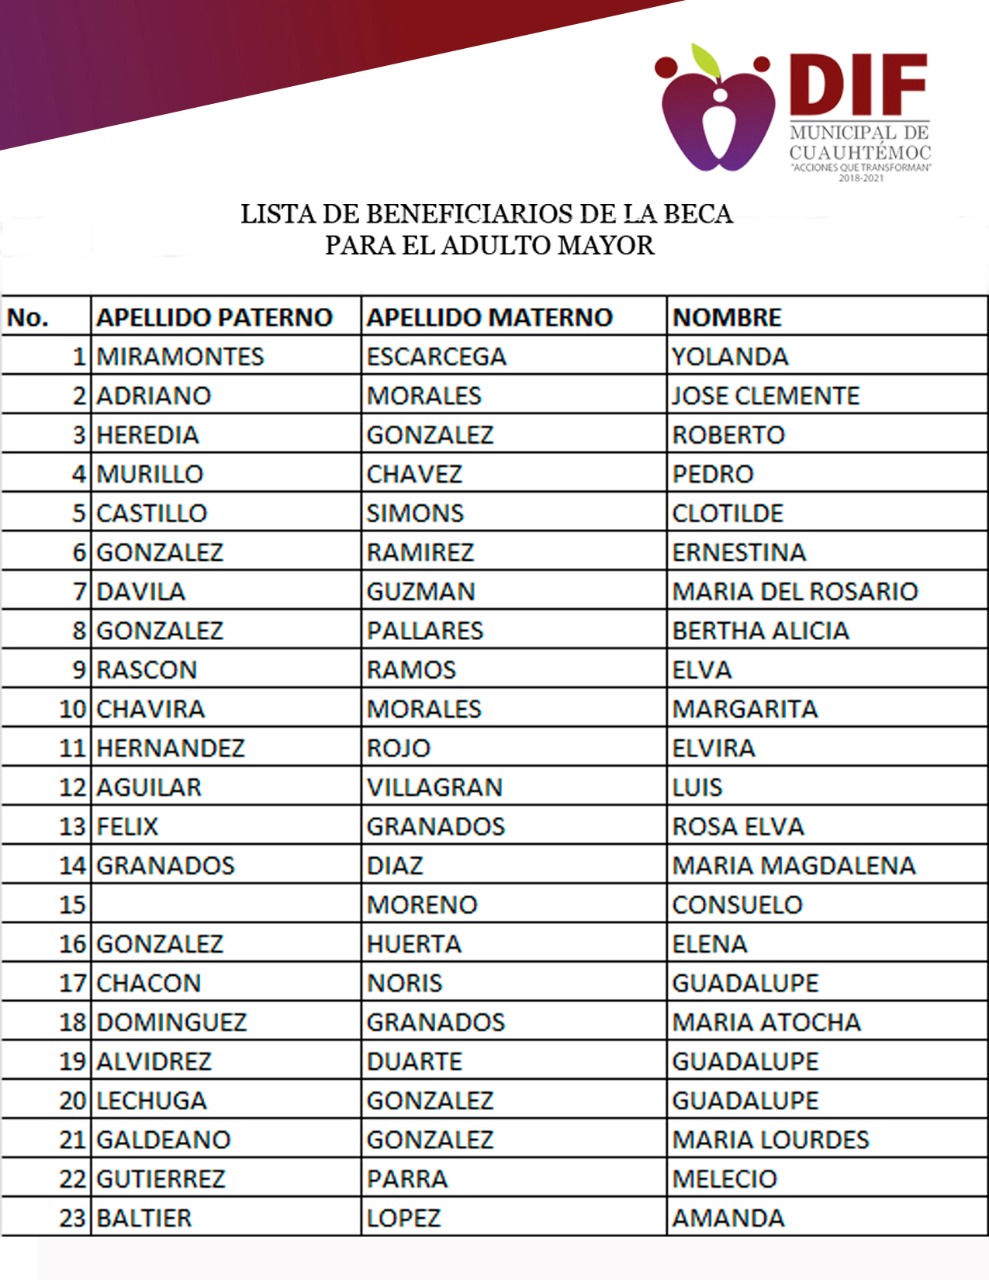 Dan a conocer la lista de beneficiarios del DIF Municipal de Cuauhtémoc